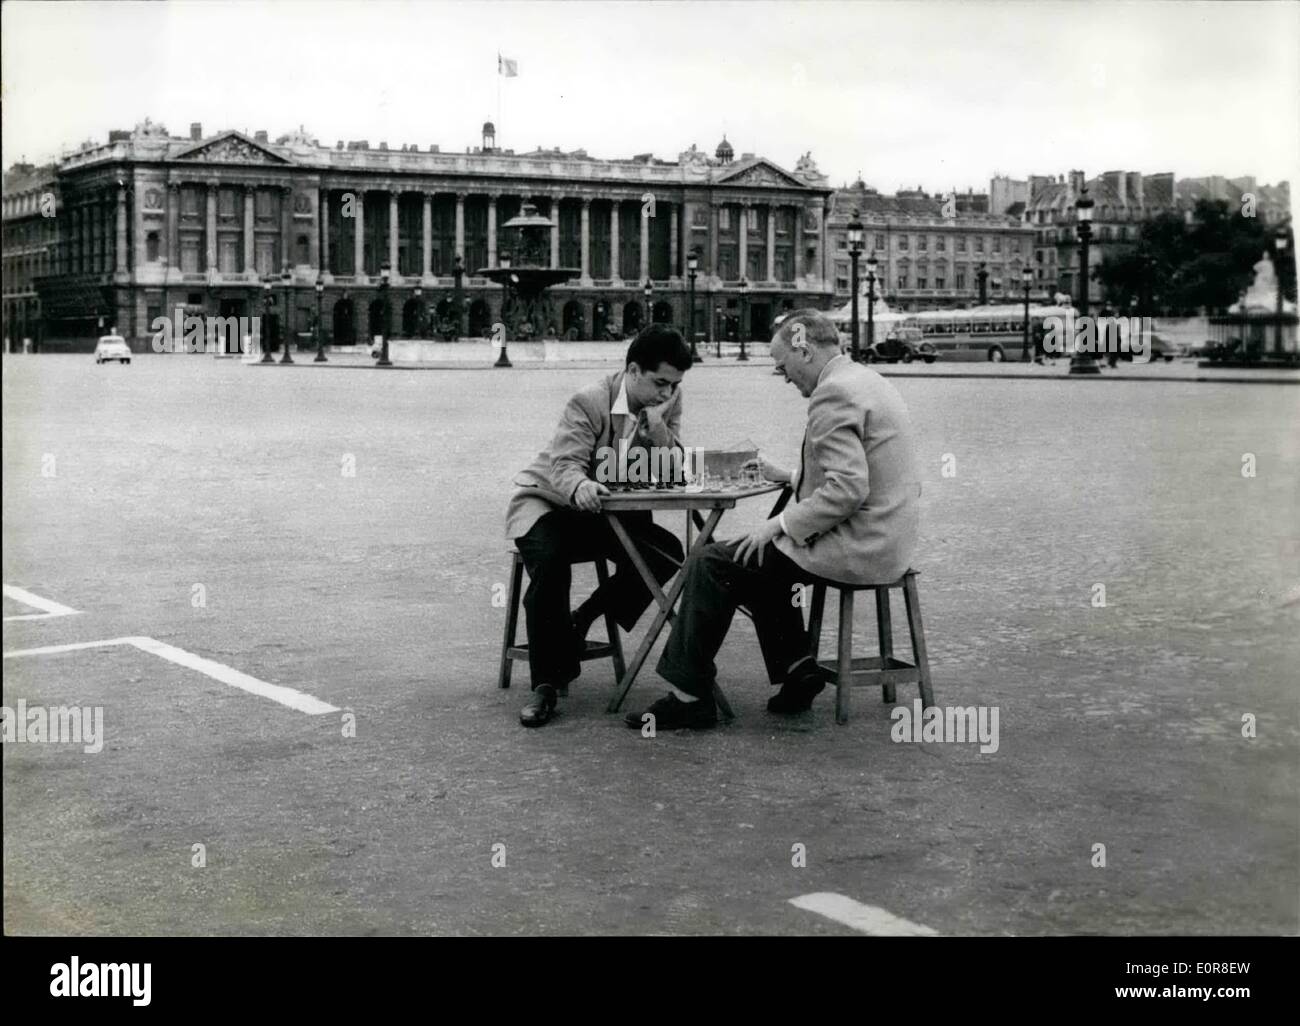 8. August 1958 - Paris verlassen als Urlaub Saison erreicht Höhepunkt OPS: The Place De La Concorde, die verkehrsreichsten Verkehrszentrale in Paris suchen vollkommen leer. Zwei Schach Fiends friedlich Indule in ihrem Lieblings Spiel recht mitten auf der Straße, wo kein Fahrzeug in Sicht ist. Stockfoto